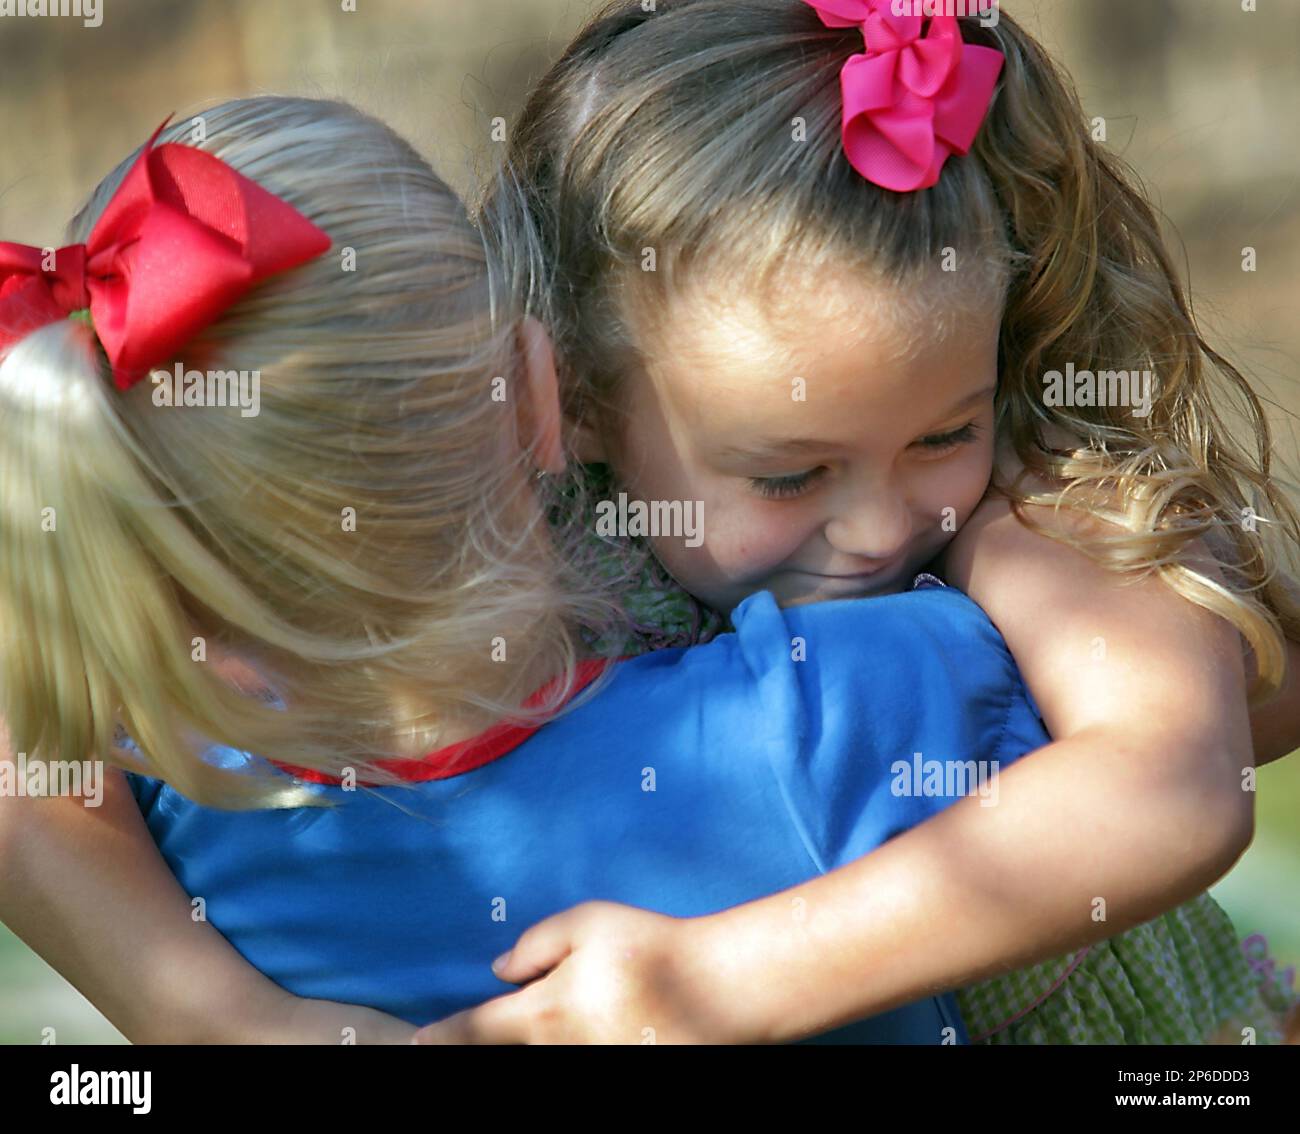 5-year-old Emma Urban hugs her K-4 classmate Sydney Bohac shortly